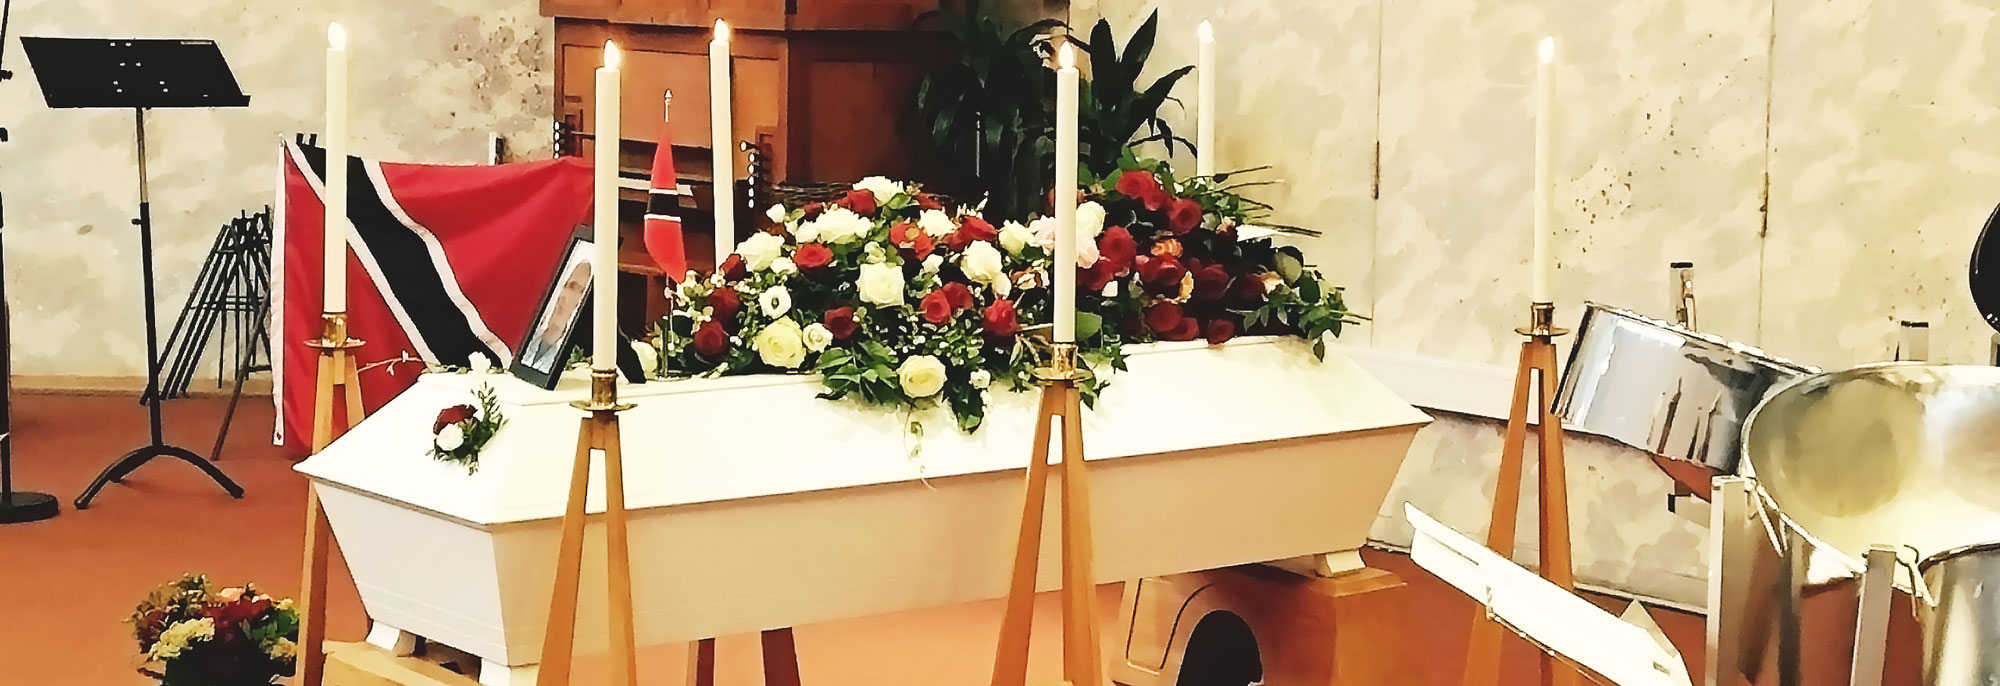 Digital begravning Stockholm